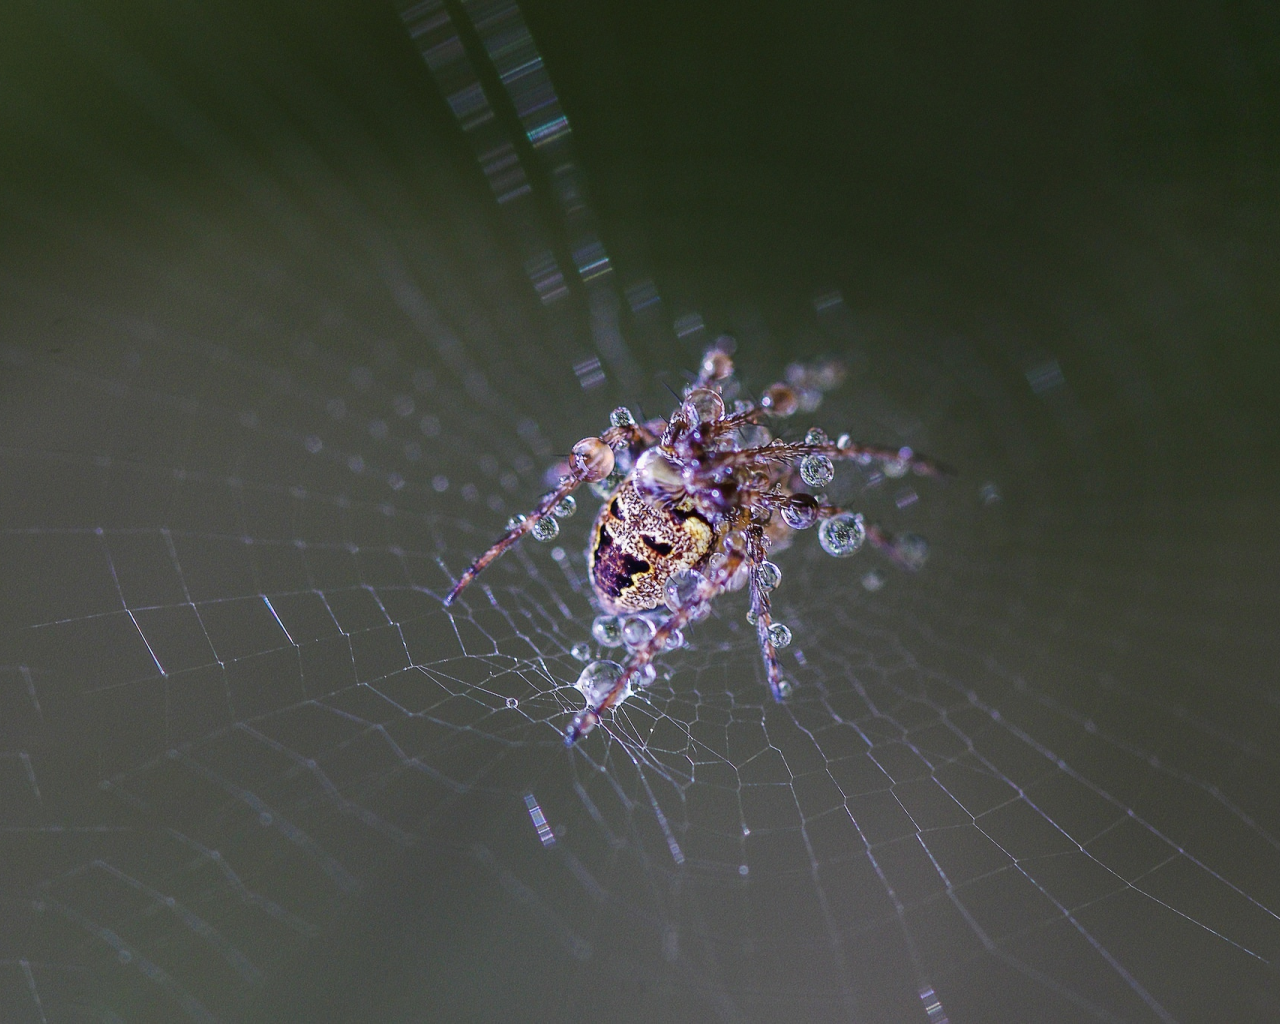 web, drops, wet, spider